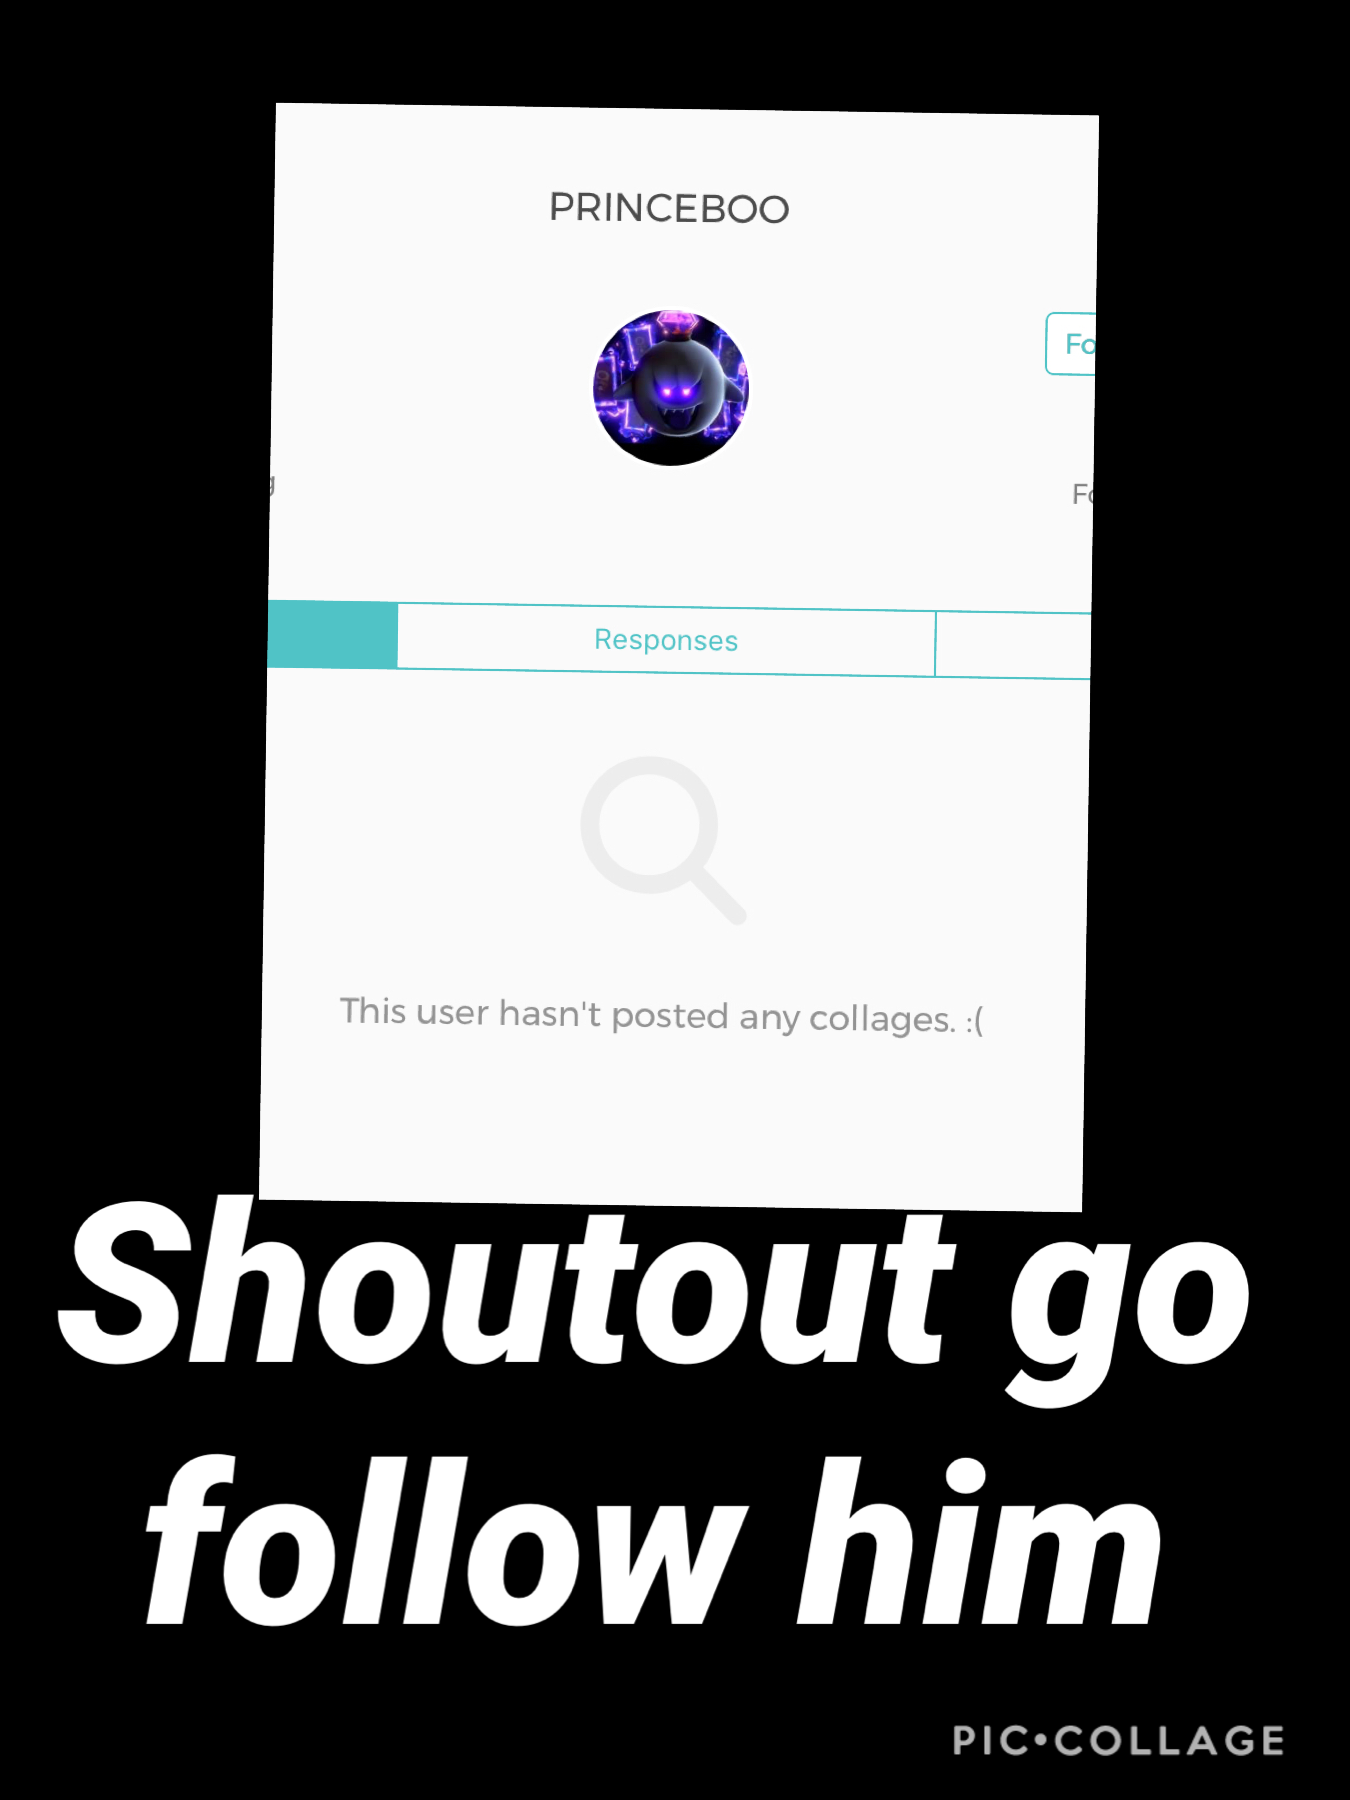 Go follow him or else 